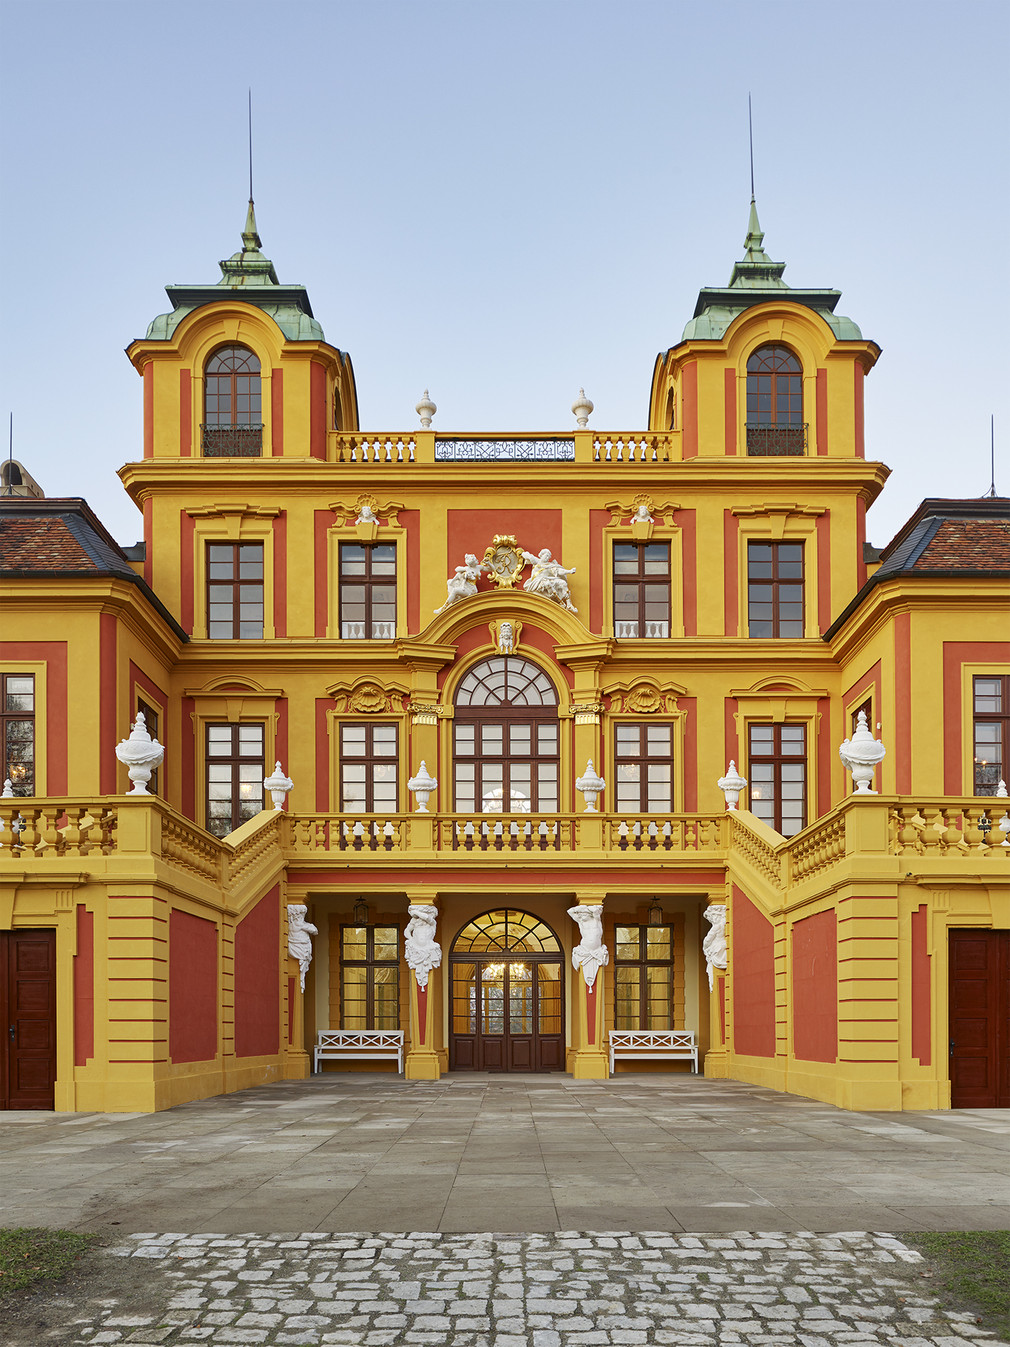 Abbildung vom Schloss Favorite in Ludwigsburg